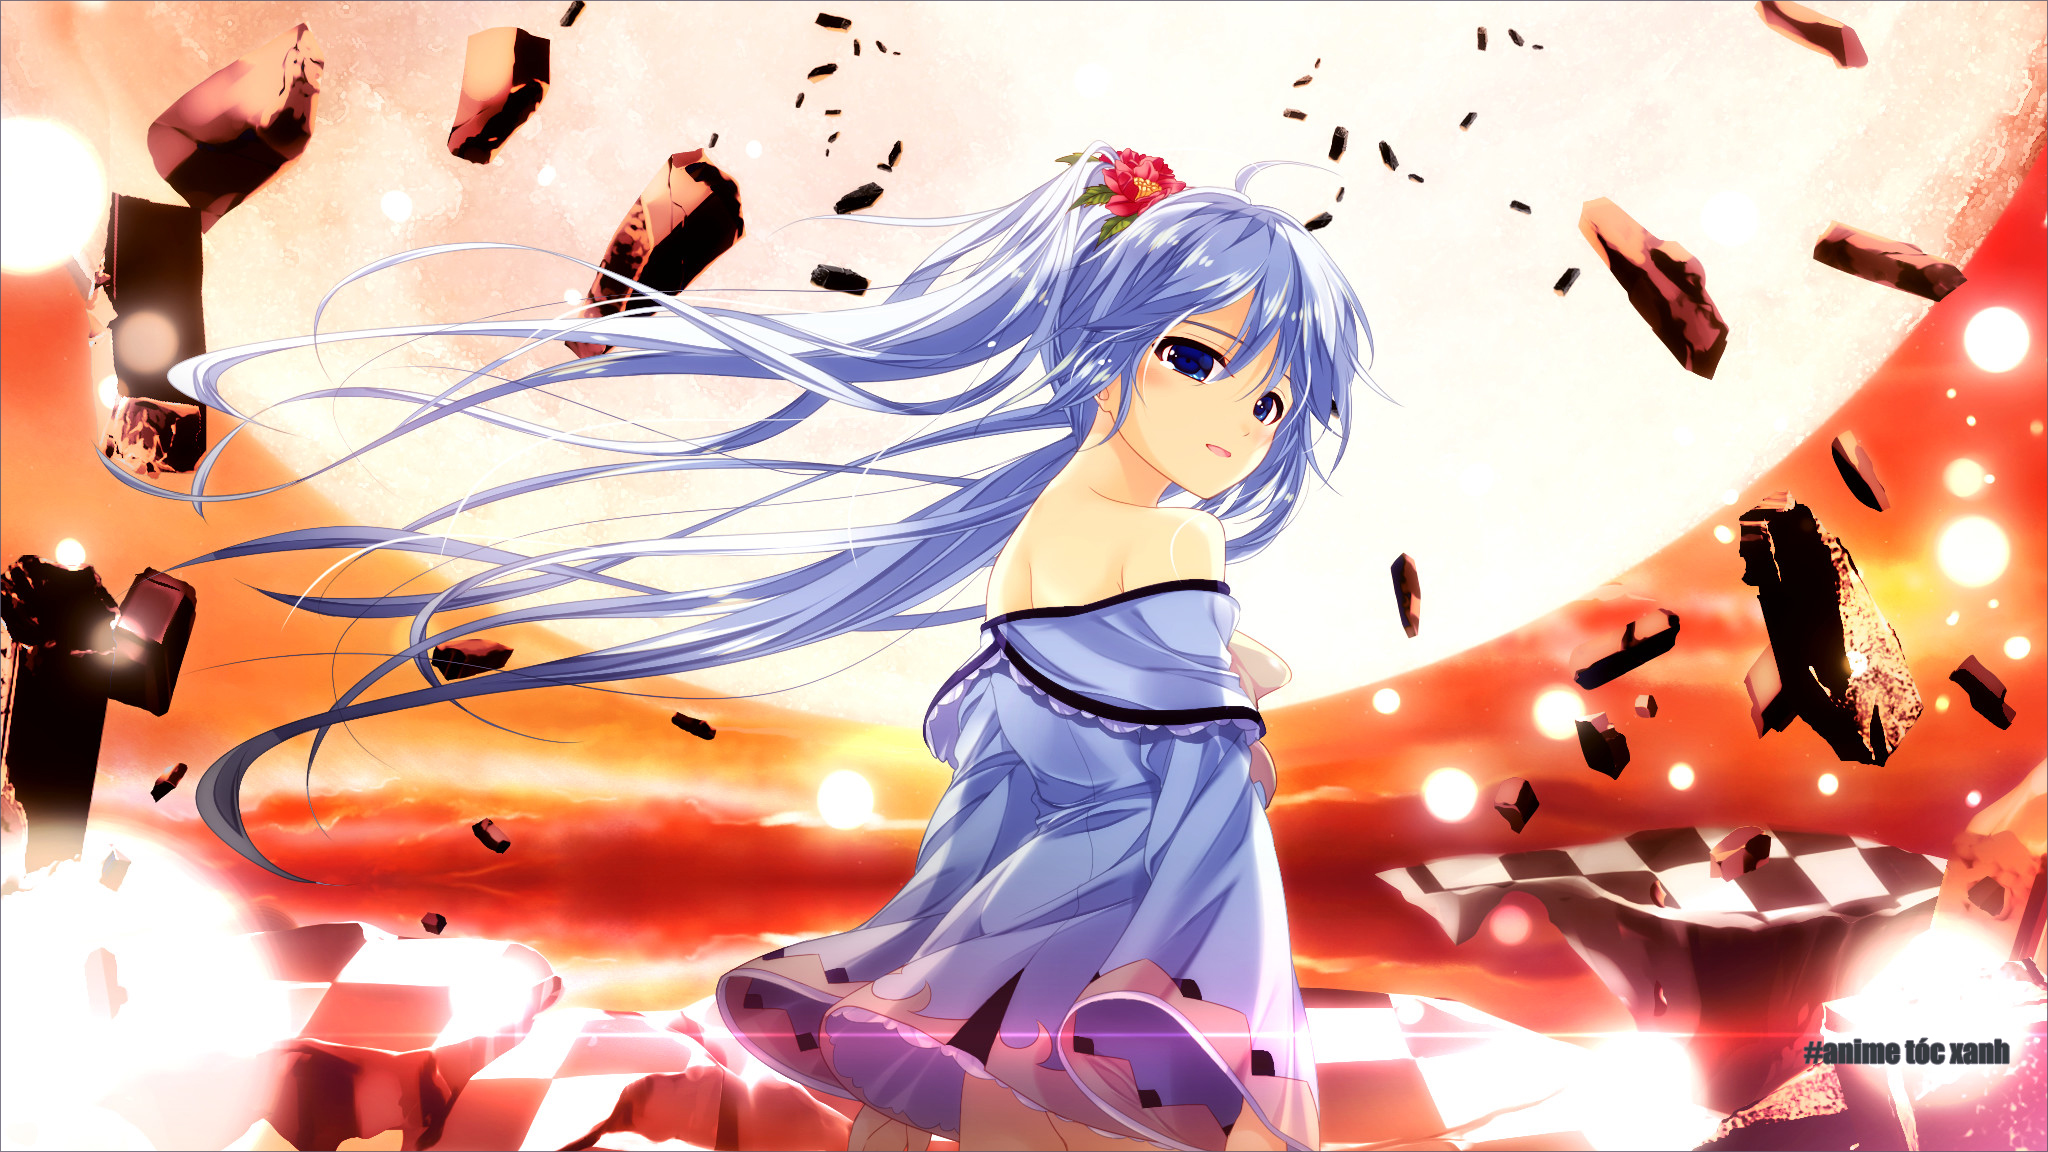 Hình ảnh đẹp của nhân vật Anime có tóc màu xanh